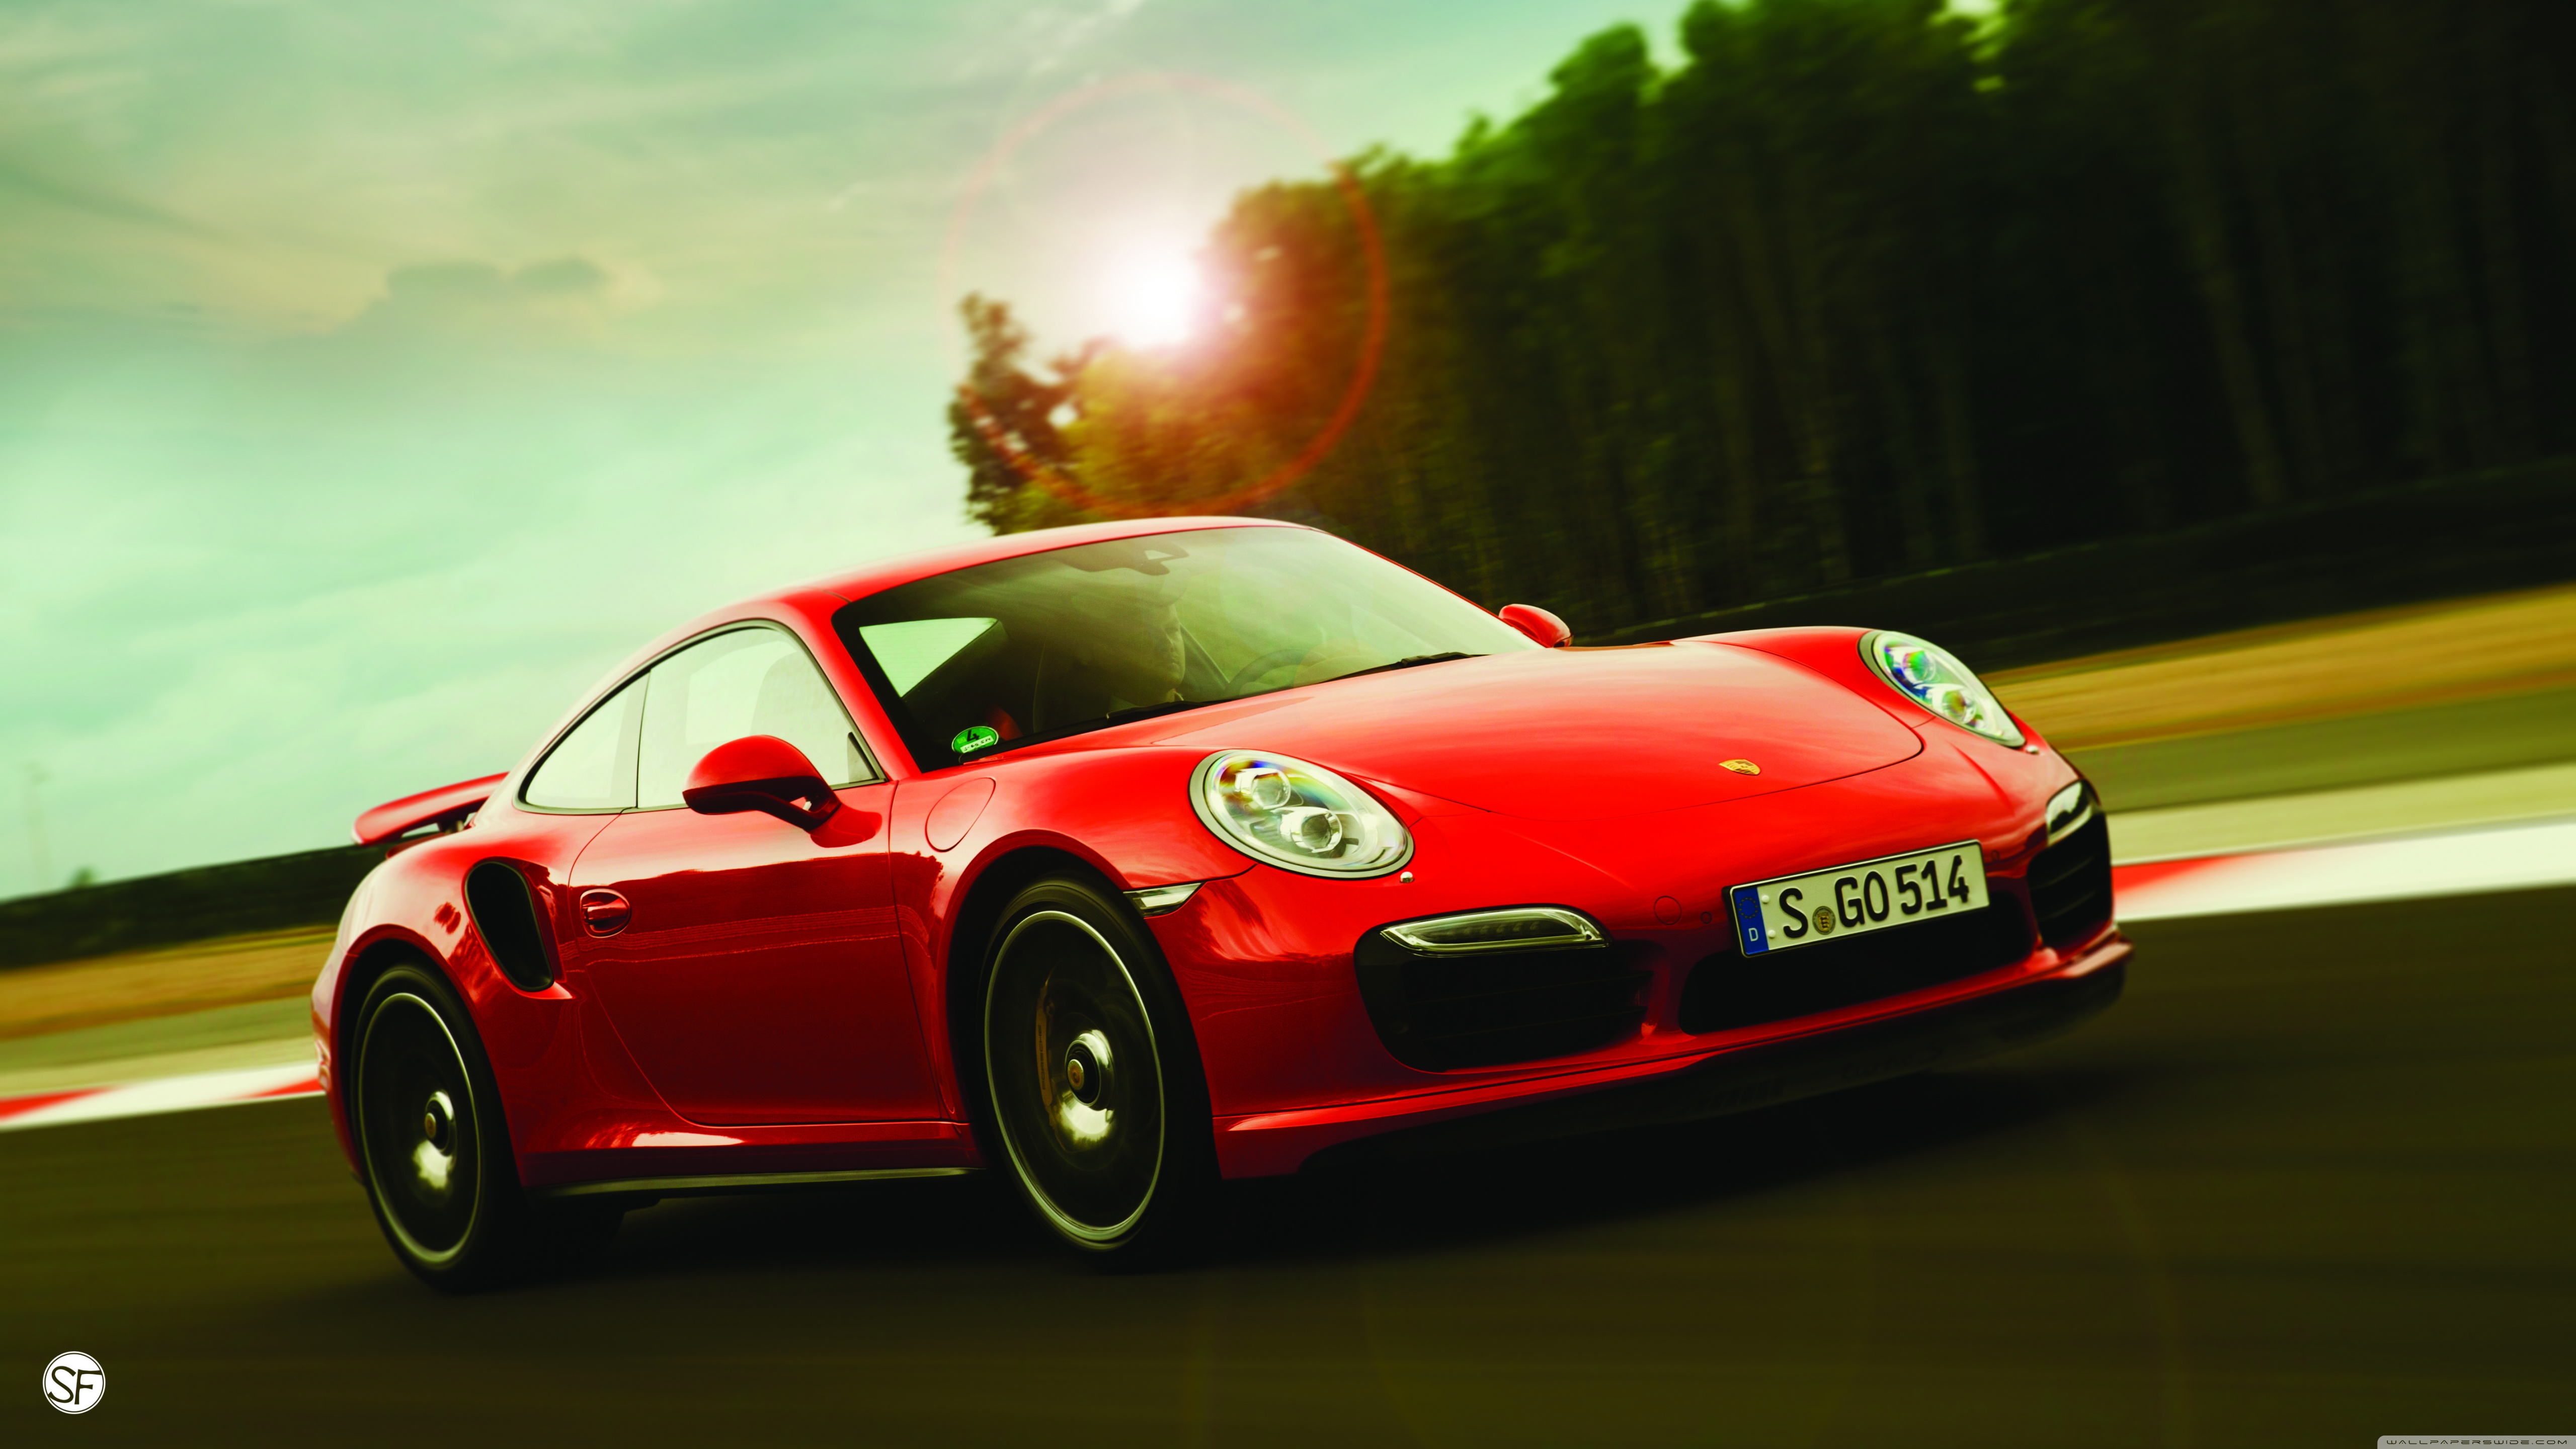 Standard - Porsche 911 Turbo S , HD Wallpaper & Backgrounds